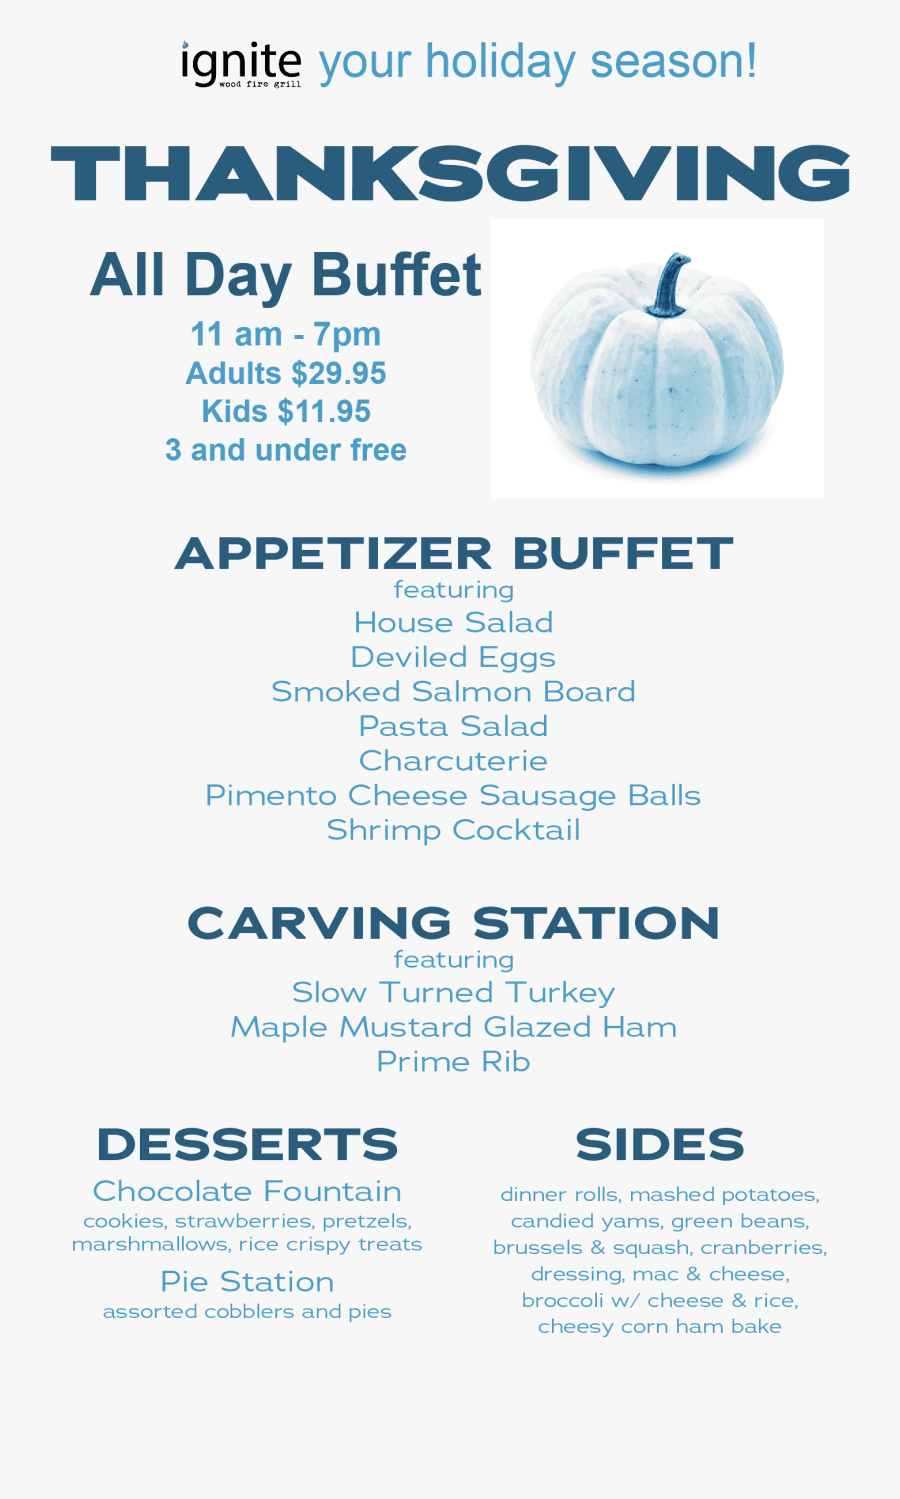 Thanksgiving Dinner - Poster - Pumpkin, Transparent Clipart